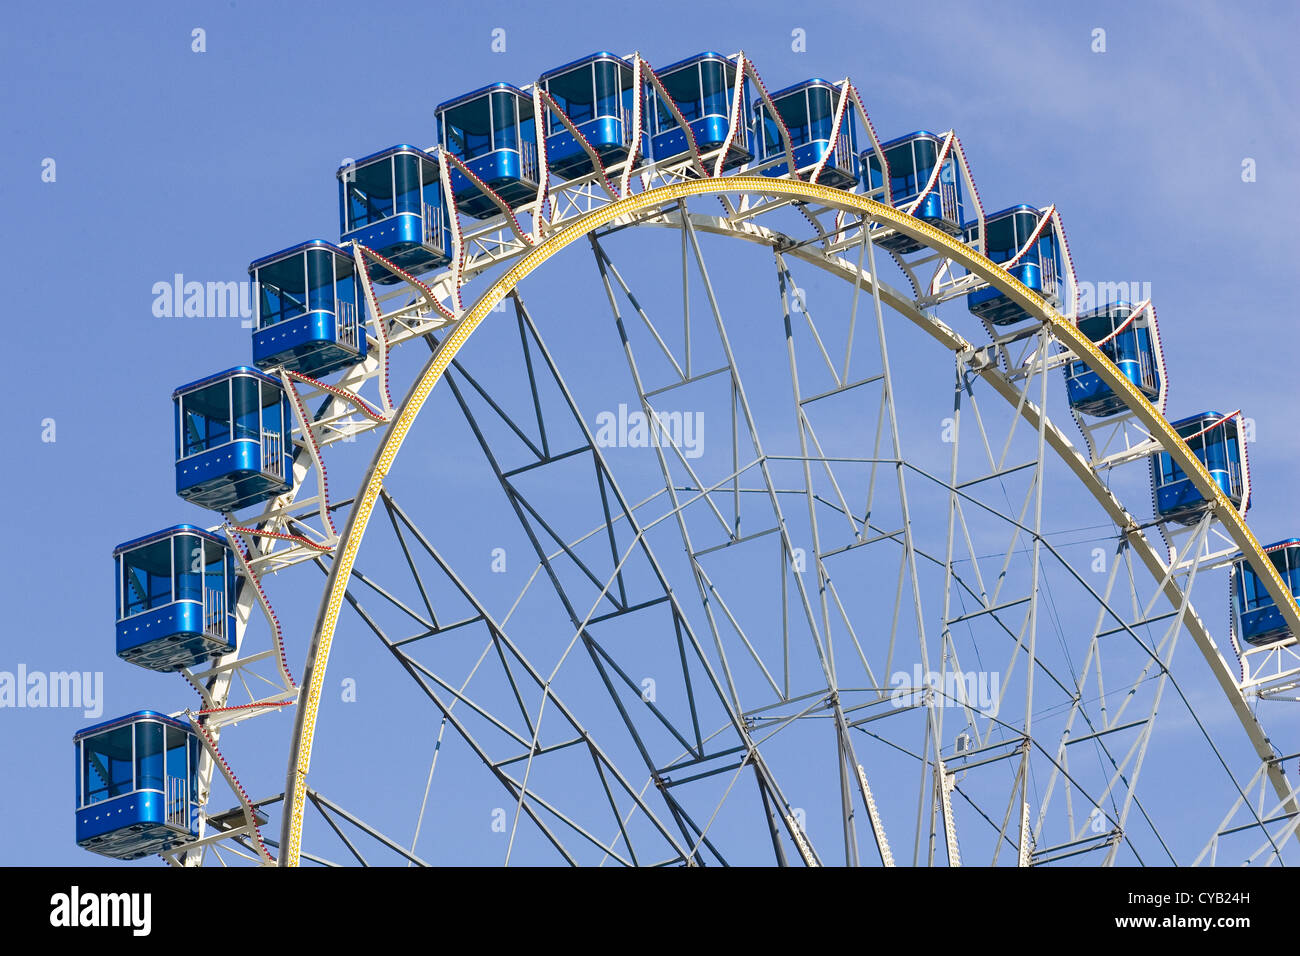 europe, switzerland, zurich, ferris wheel Stock Photo